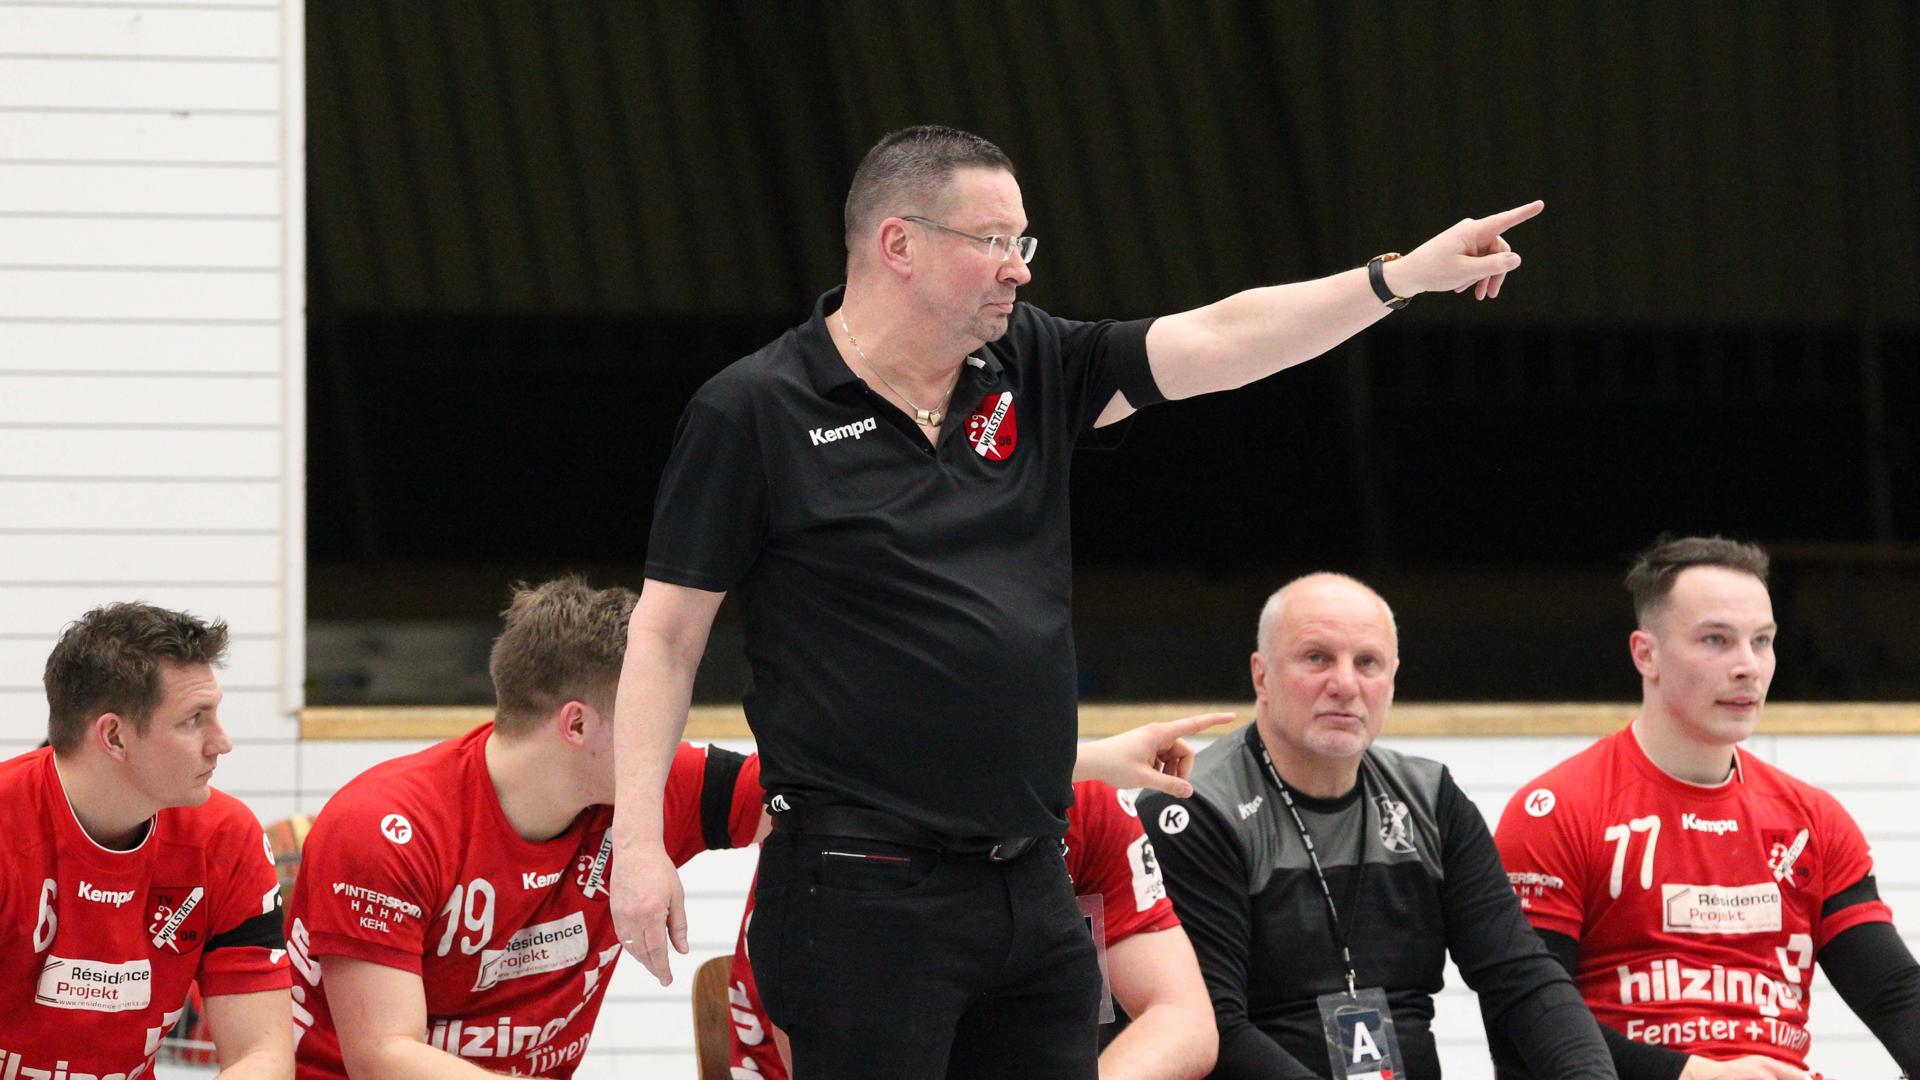 Nach oben: Trainer Ole Andersen zeigt an, wohin der Weg des südbadischen Handball-Drittligisten TV Willstätt mittelfristig führen soll.